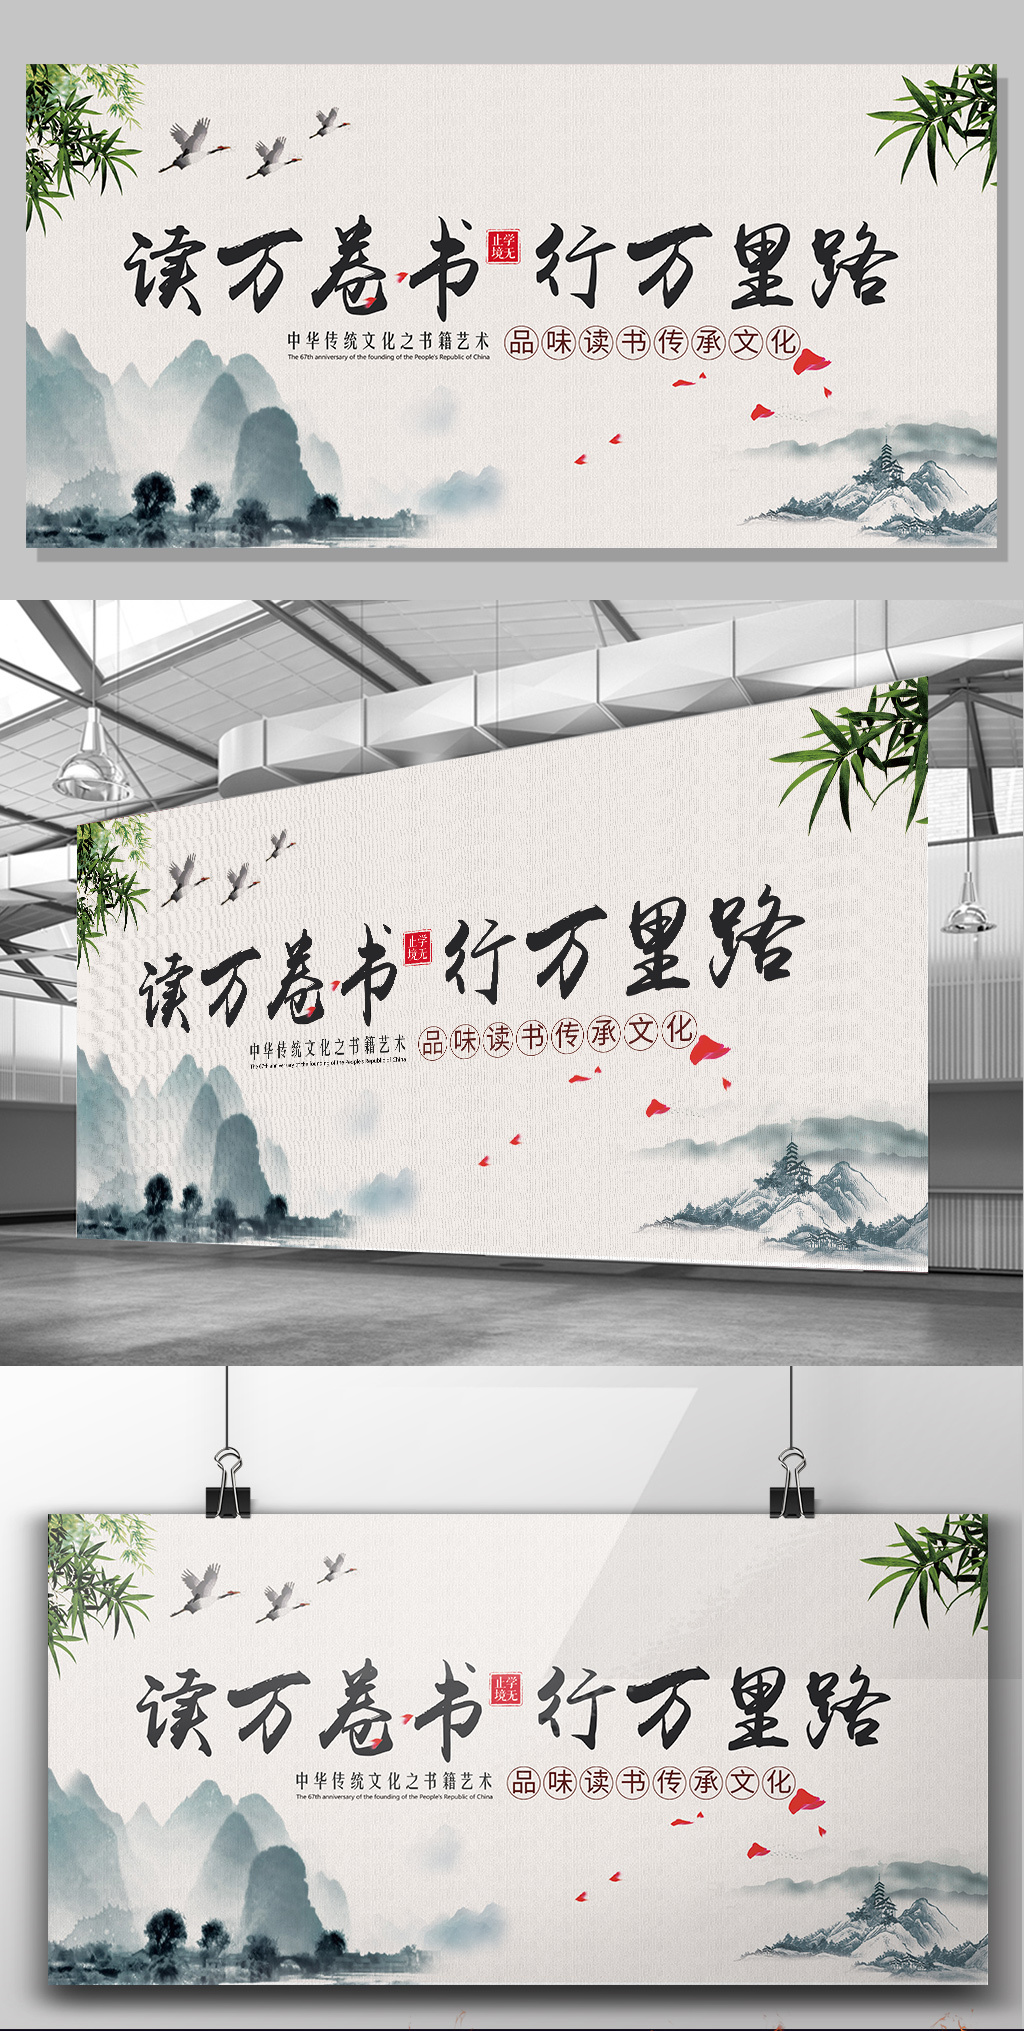 2017中国风传承古典文化读书会交流会展板图片